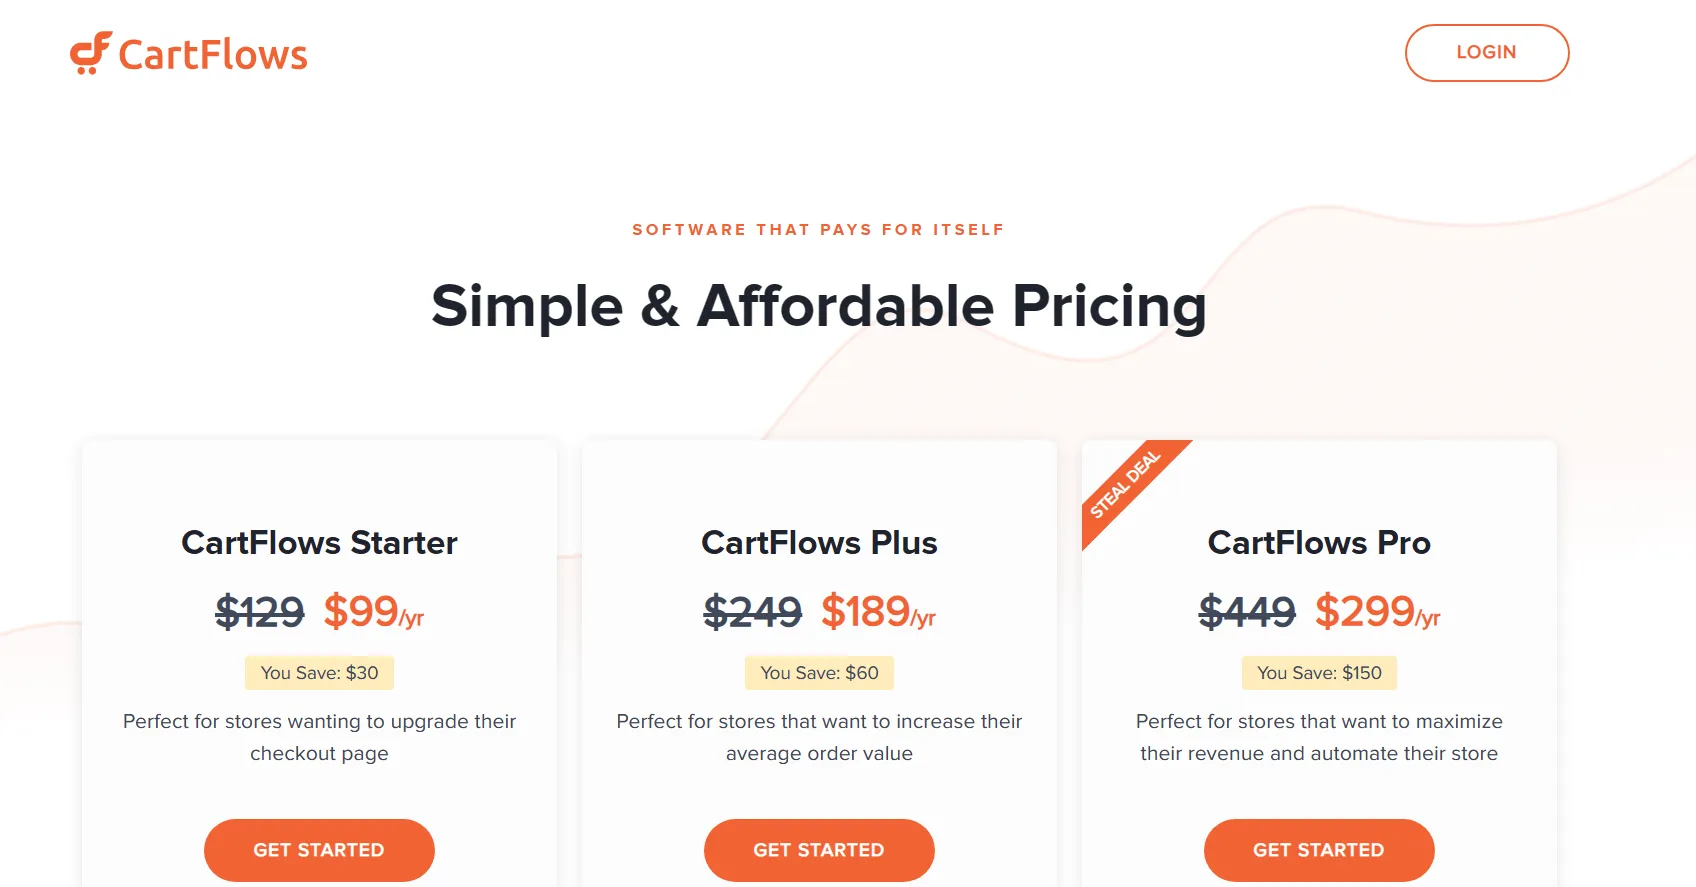 CartFlows Pricing